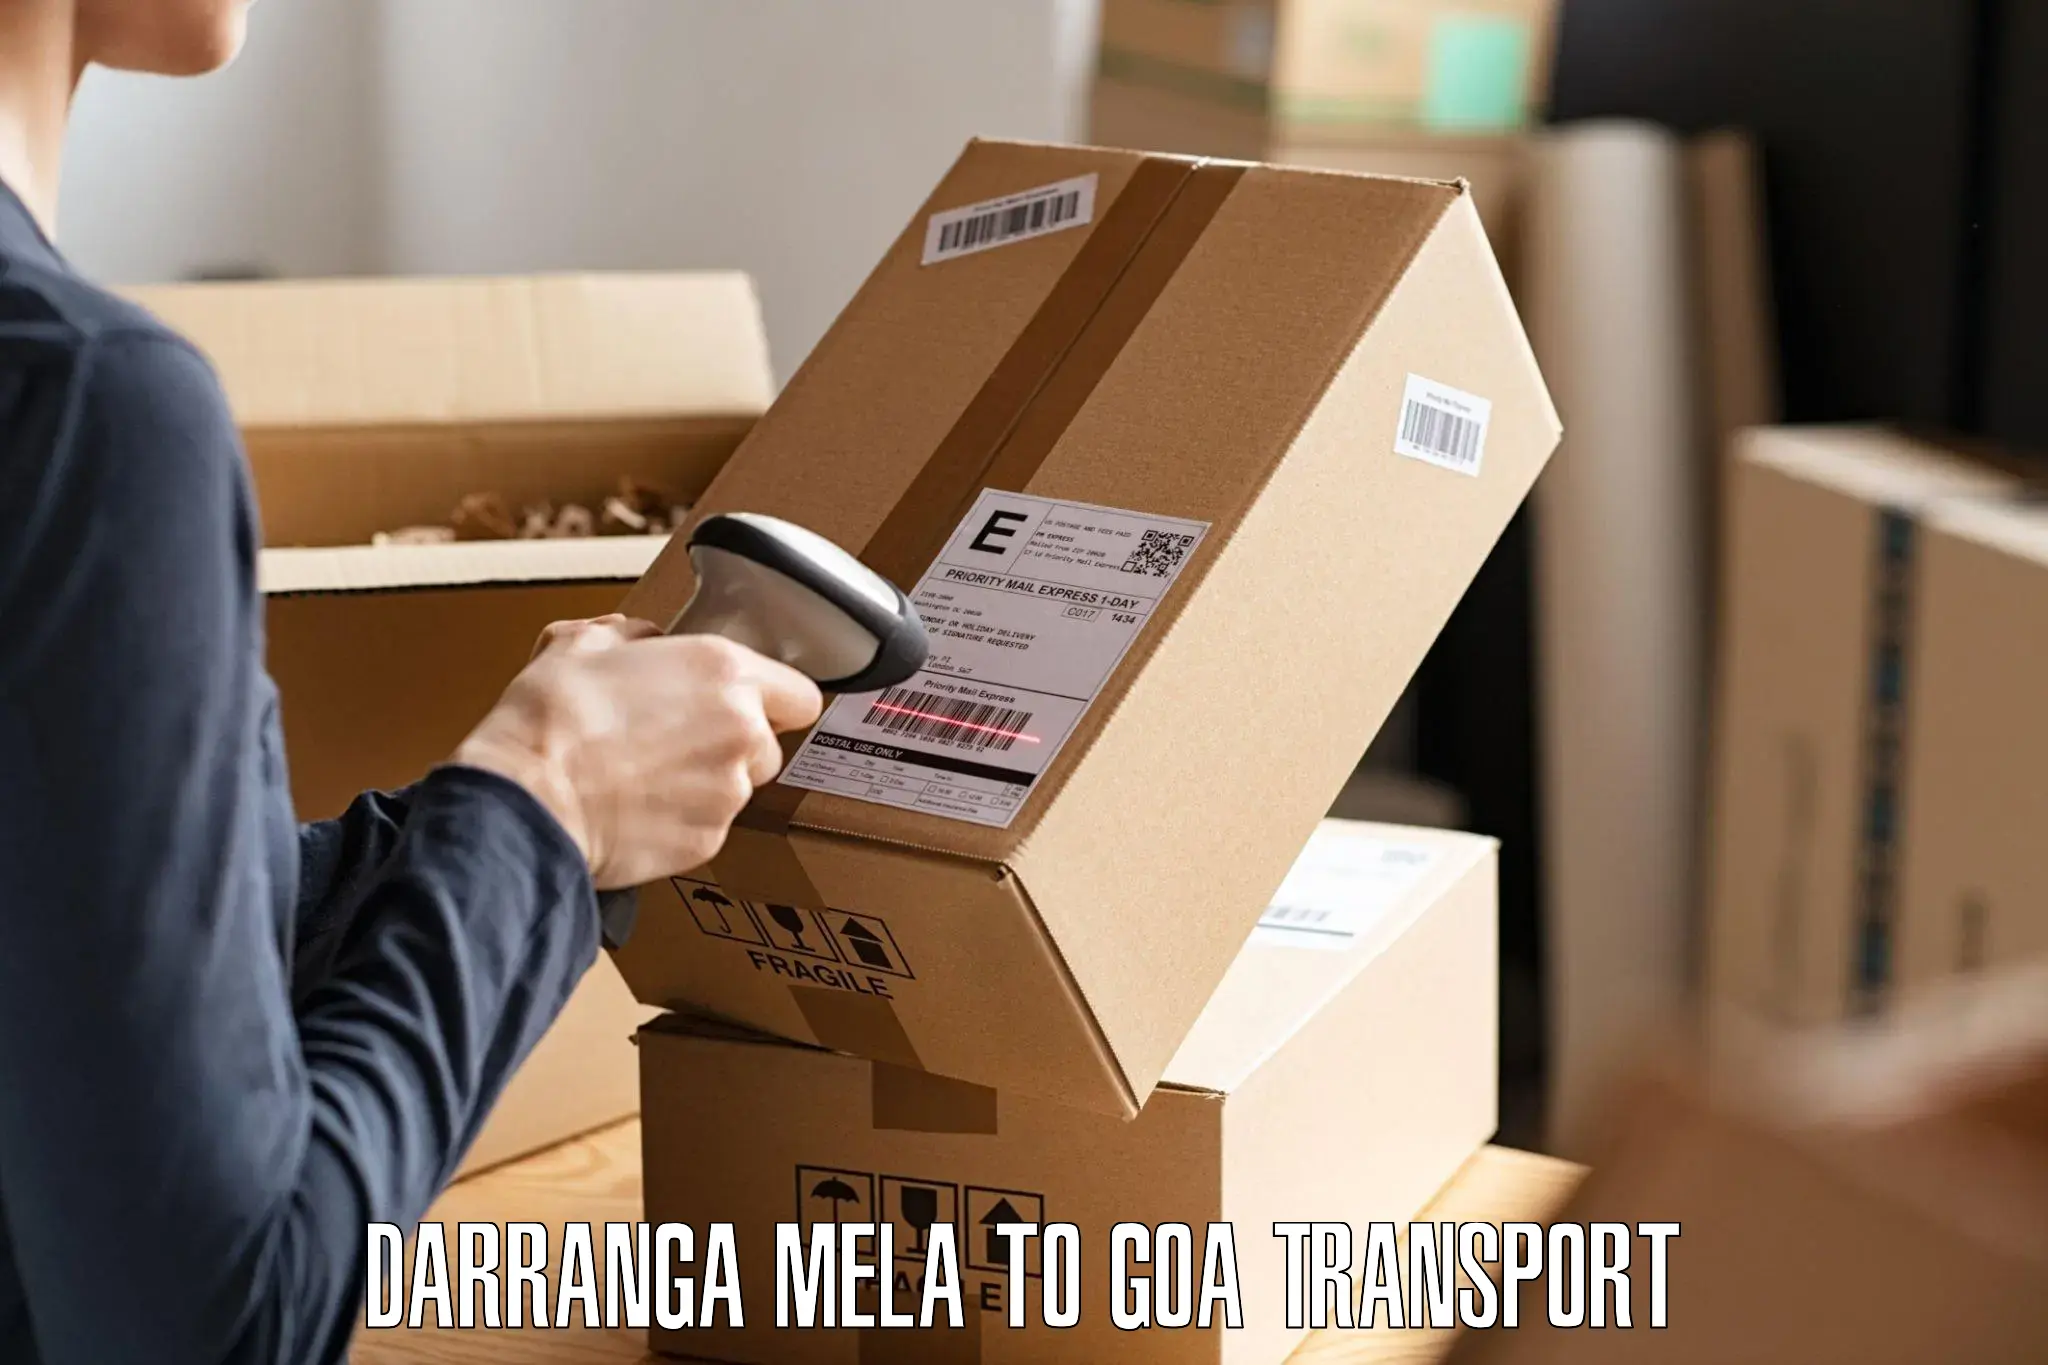 Cargo train transport services Darranga Mela to Vasco da Gama